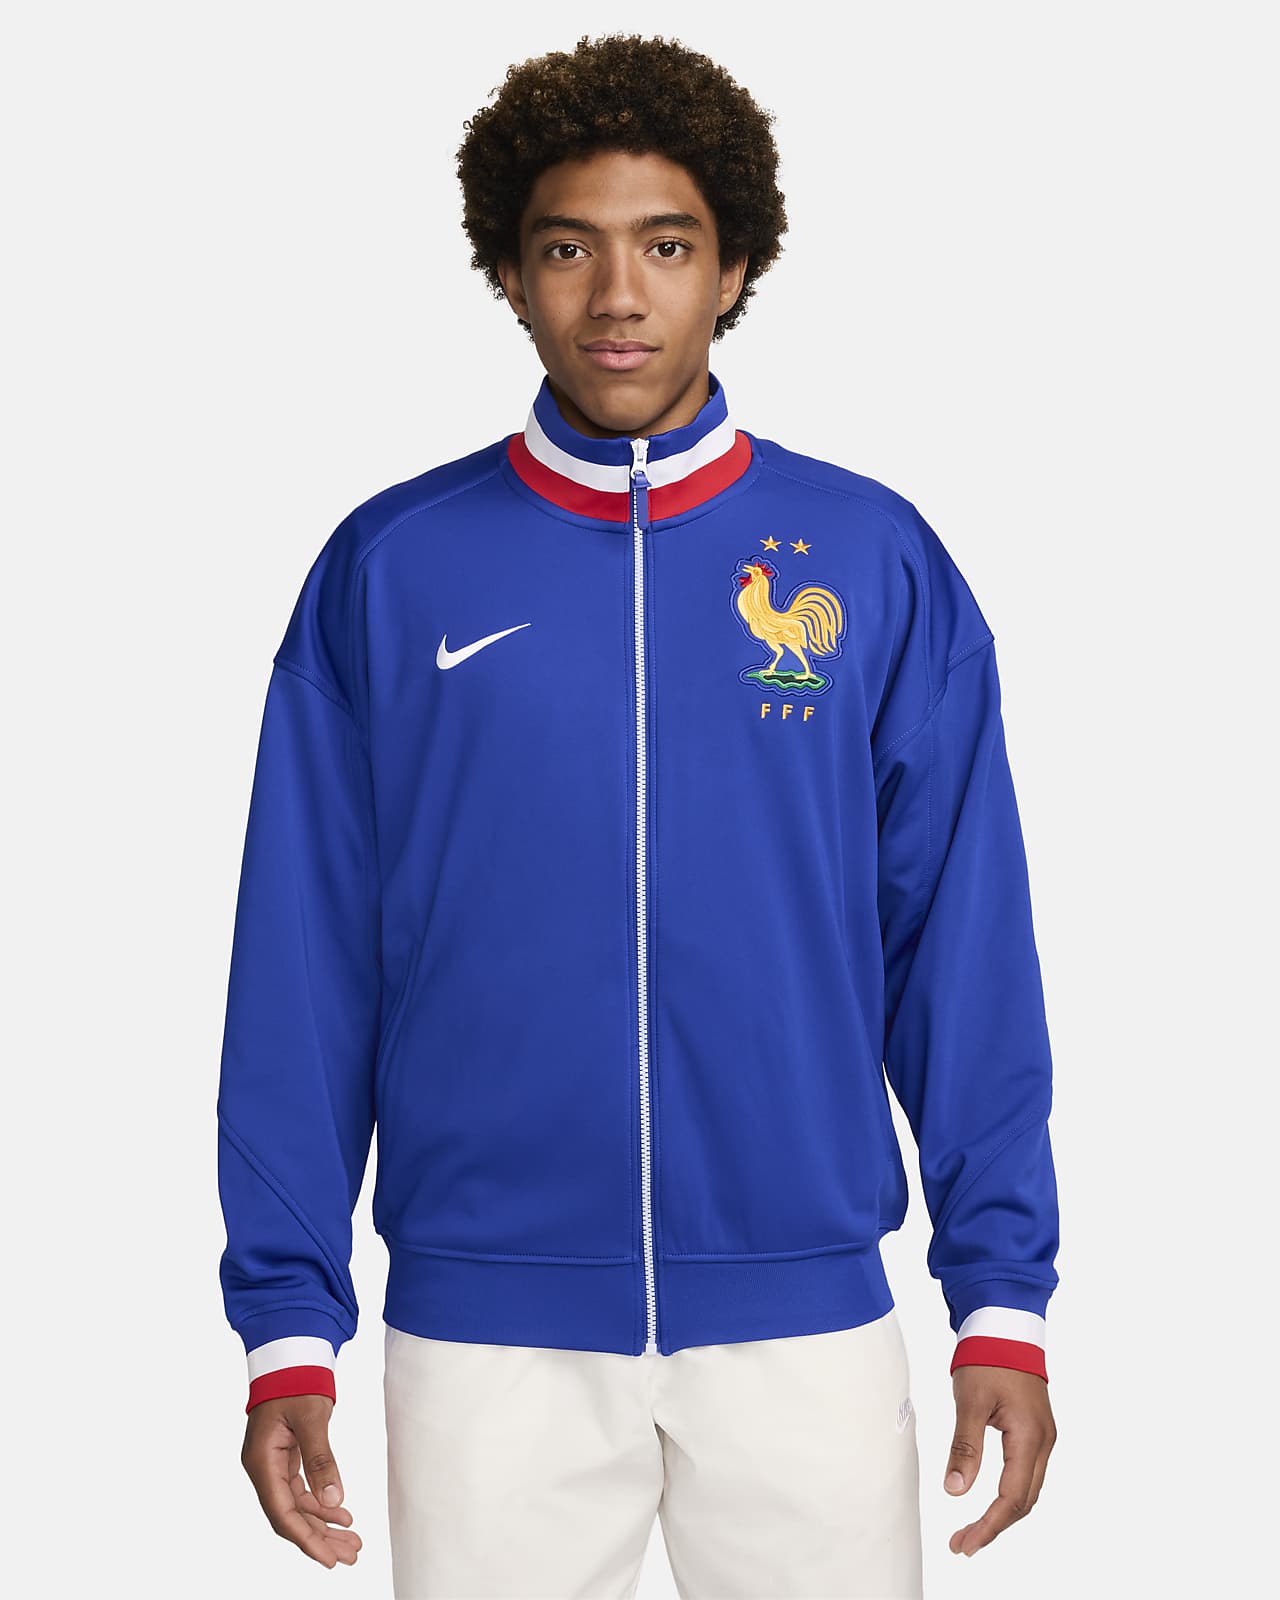 FFF Academy Pro Home Men's Nike Dri-FIT Soccer Jacket